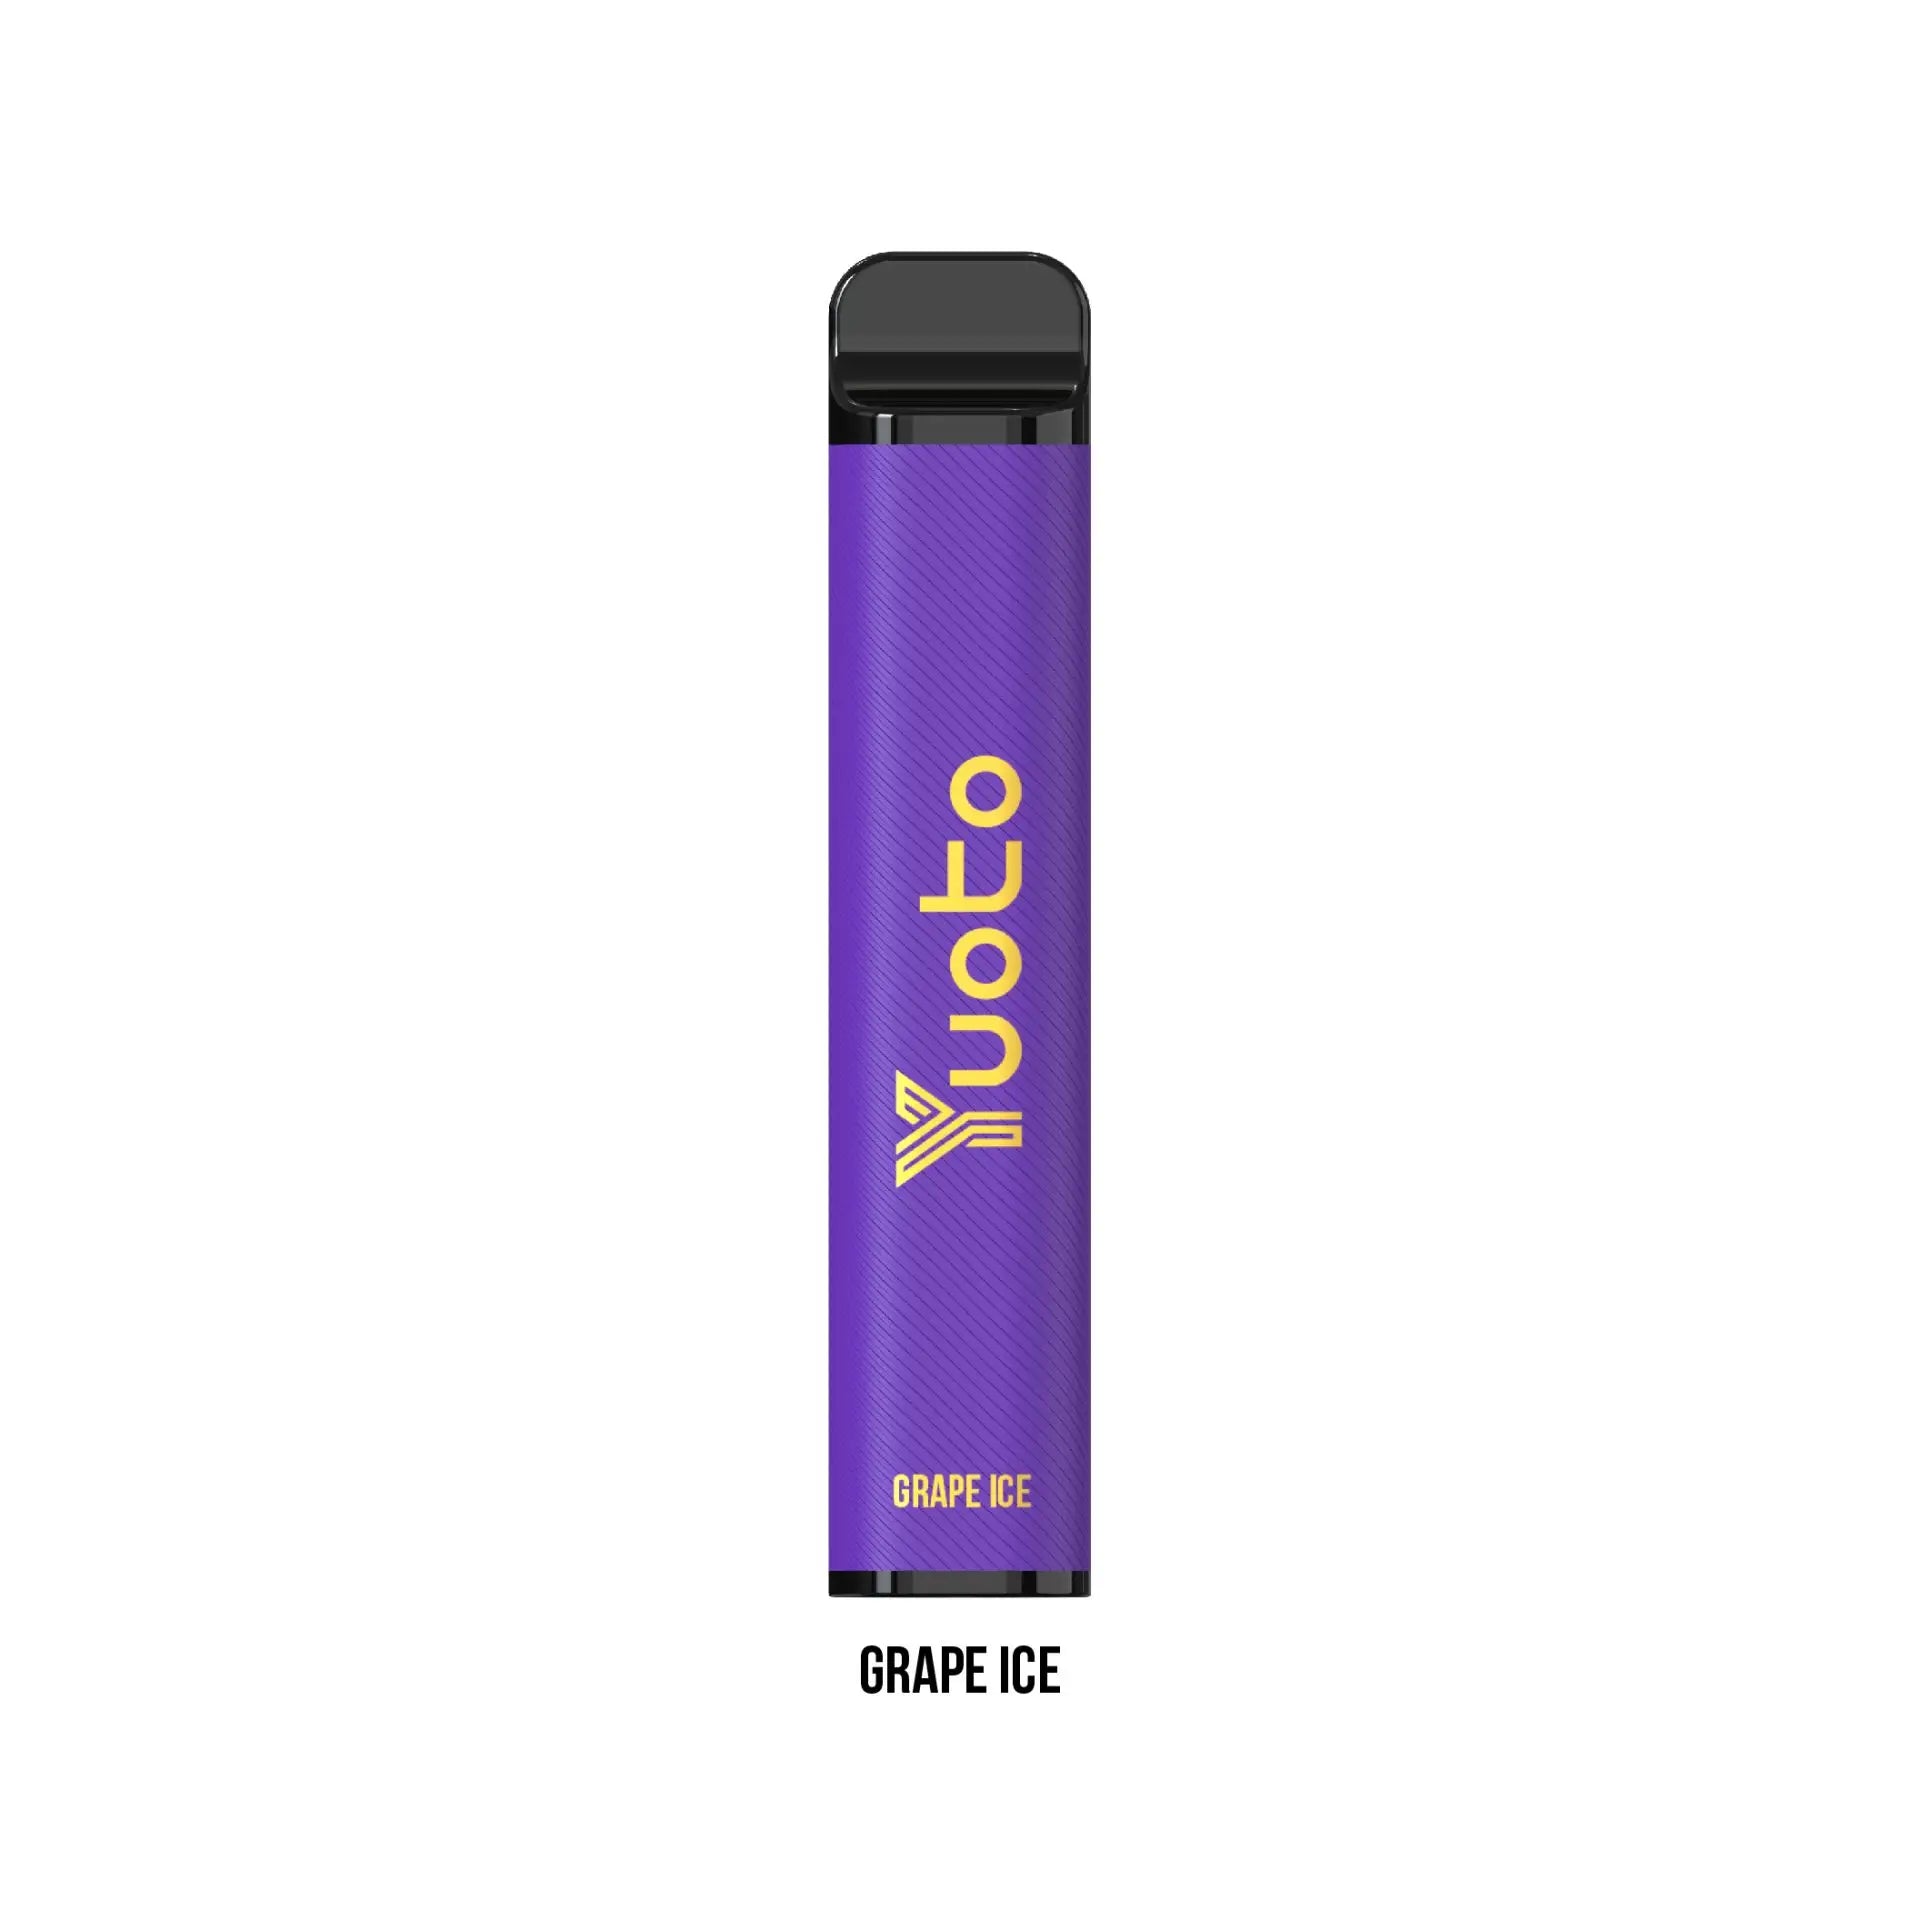 Upptäck en av de mest populära smakerna med Yuoto XXL Max Grape Ice. Med en storlek på 9ml och en högsta effekt på 20w, är denna juice designad för att ge en intensiv och hållbar smakupplevelse. Perfekt för de som vill ha en fruktig och uppfriskande ånga, prova det idag med din mechmod eller coil-kit.